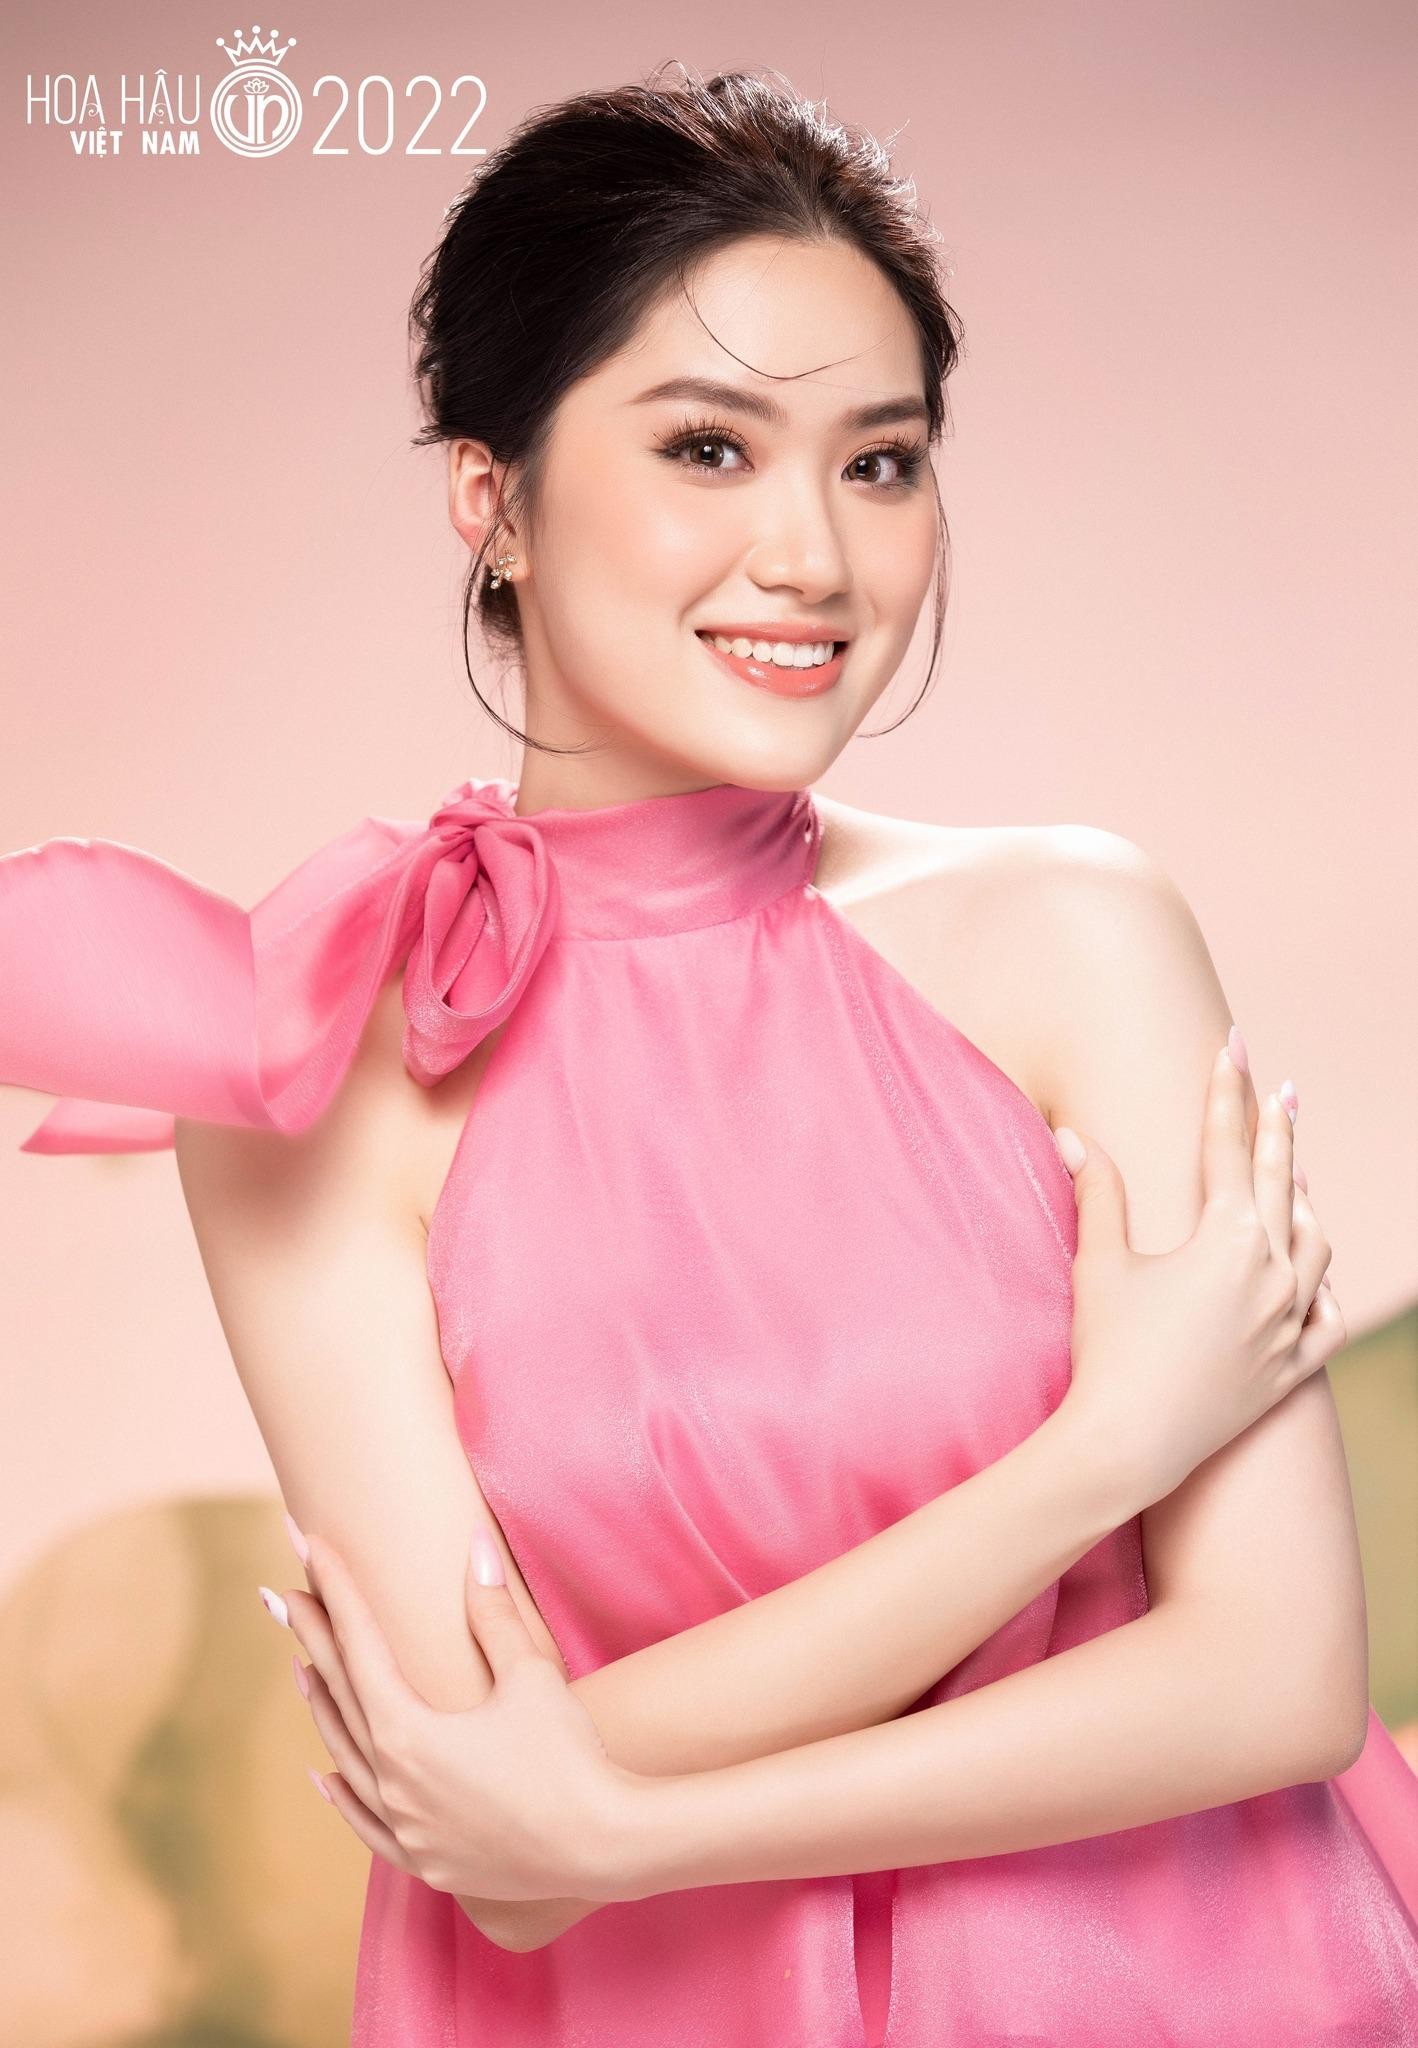 Nhan sắc cận của thí sinh Hoa hậu Việt Nam 2022 - Ảnh 3.